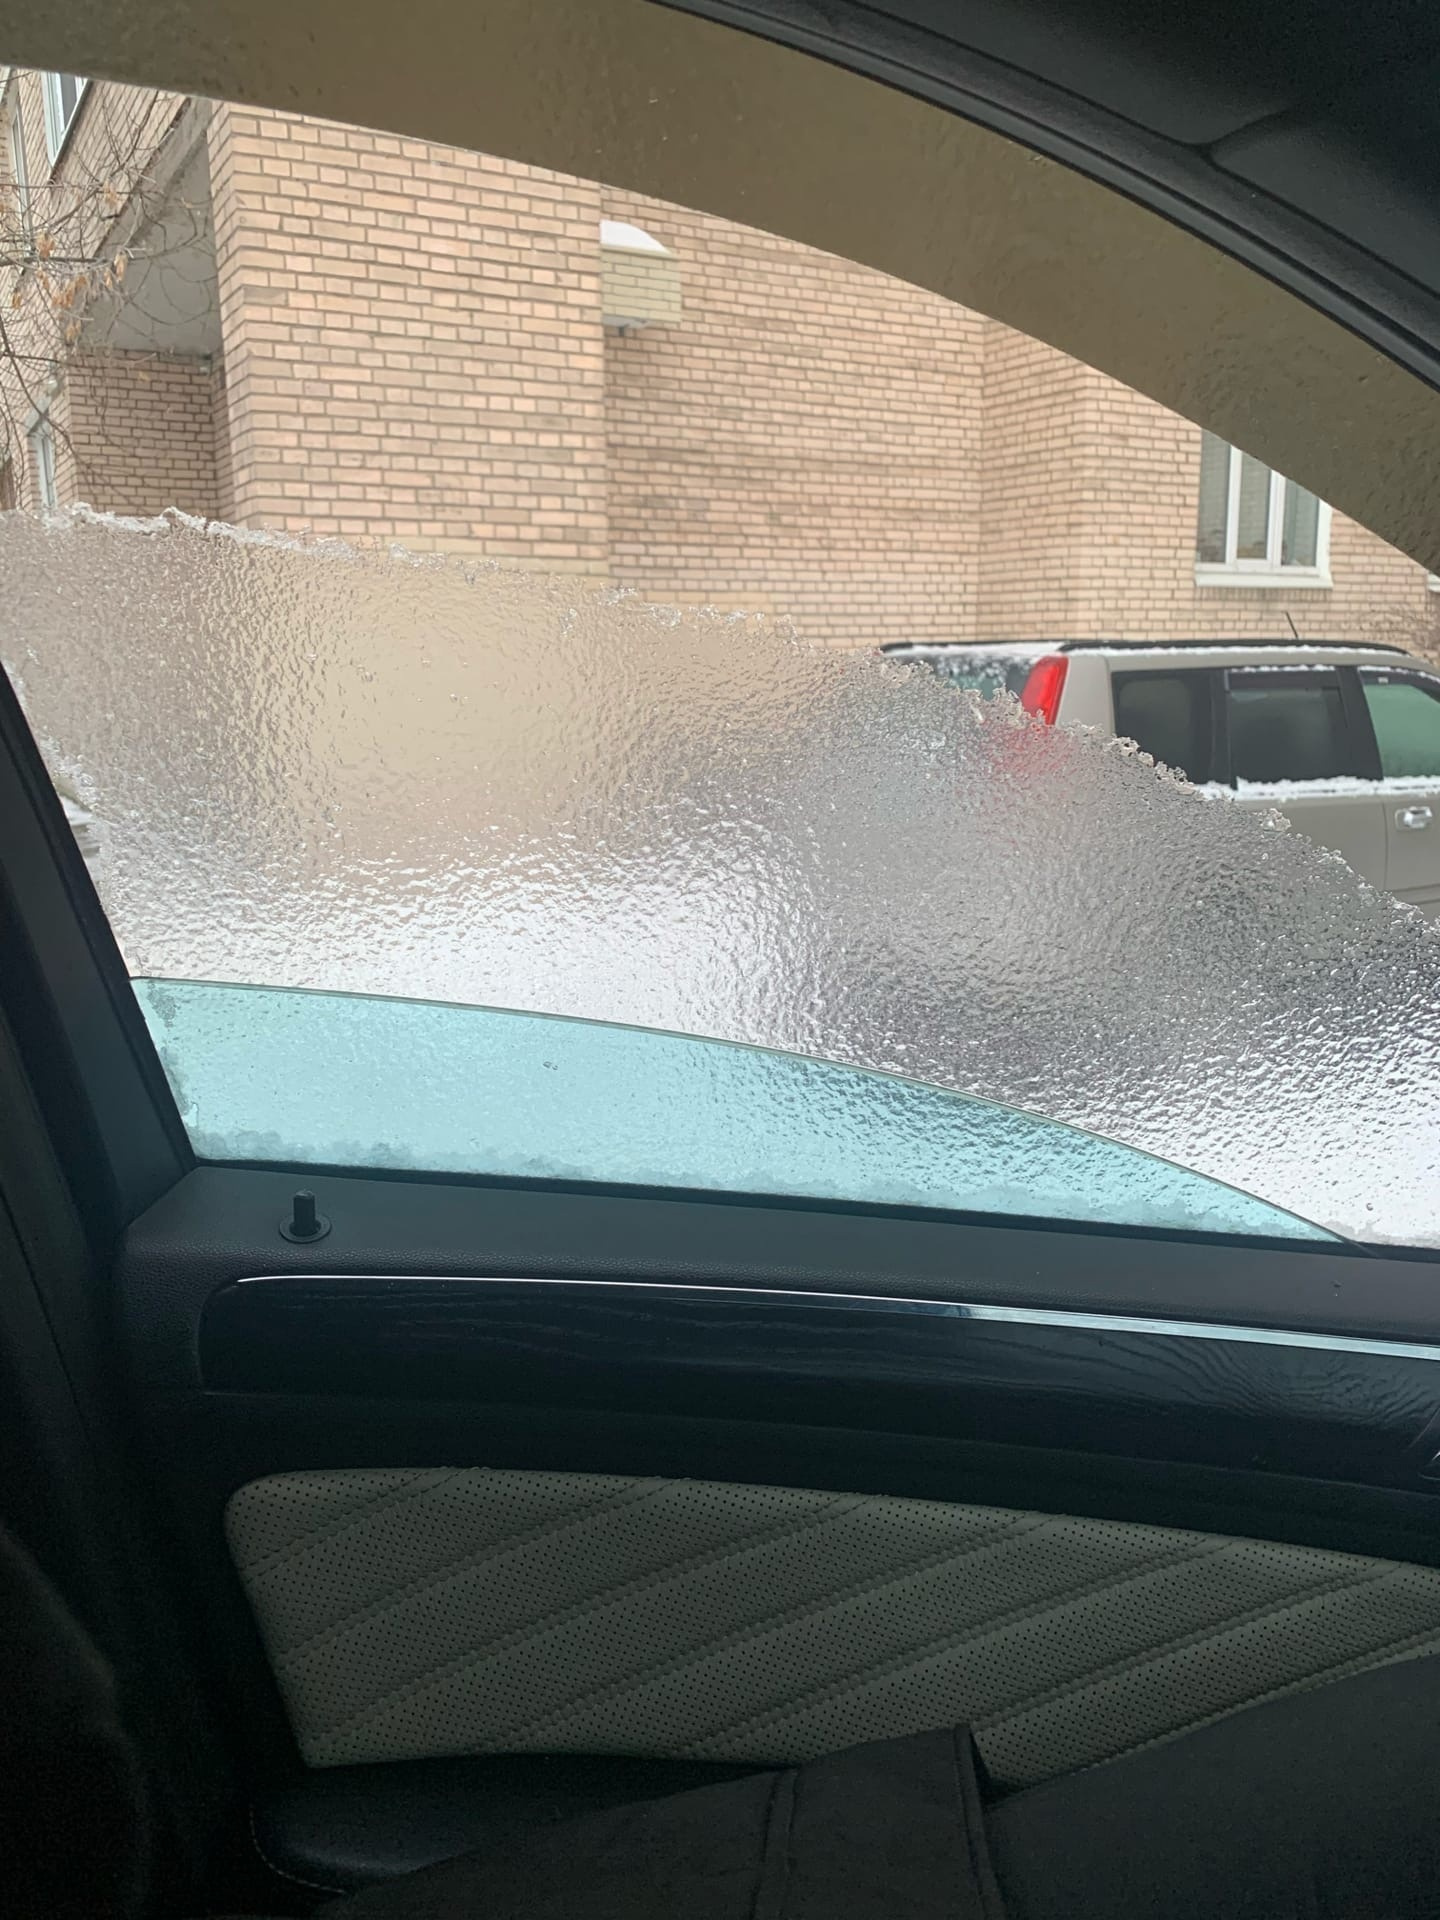 Пилка для ногтей или тёплый паркинг? Как водители в Петербурге встретили «адский лёд, что даже скребок не берёт»